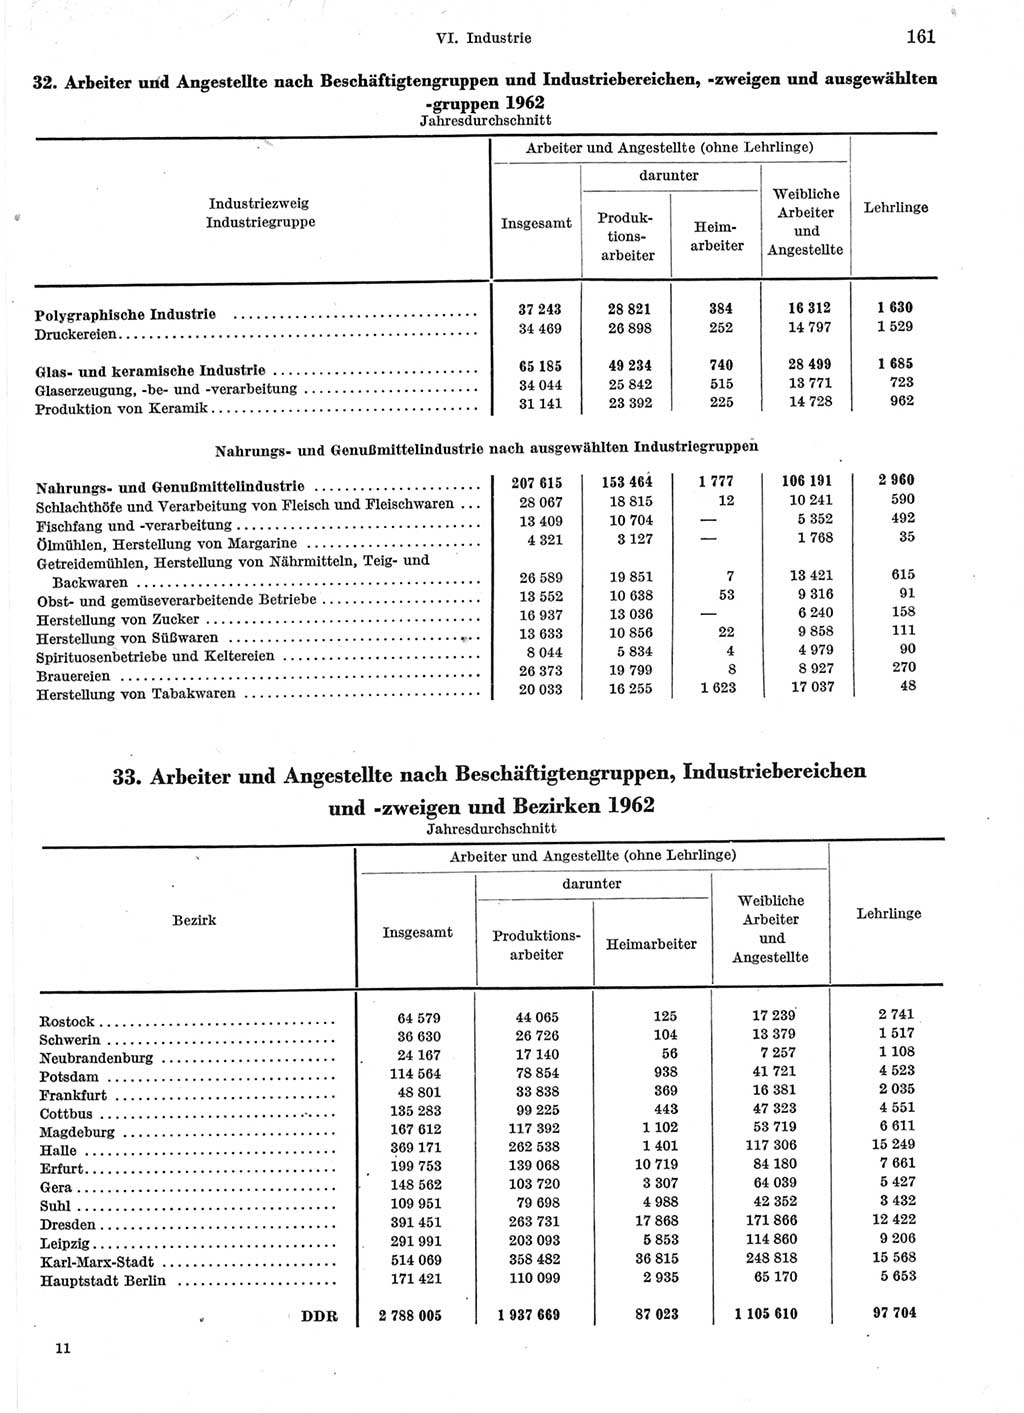 Statistisches Jahrbuch der Deutschen Demokratischen Republik (DDR) 1963, Seite 161 (Stat. Jb. DDR 1963, S. 161)